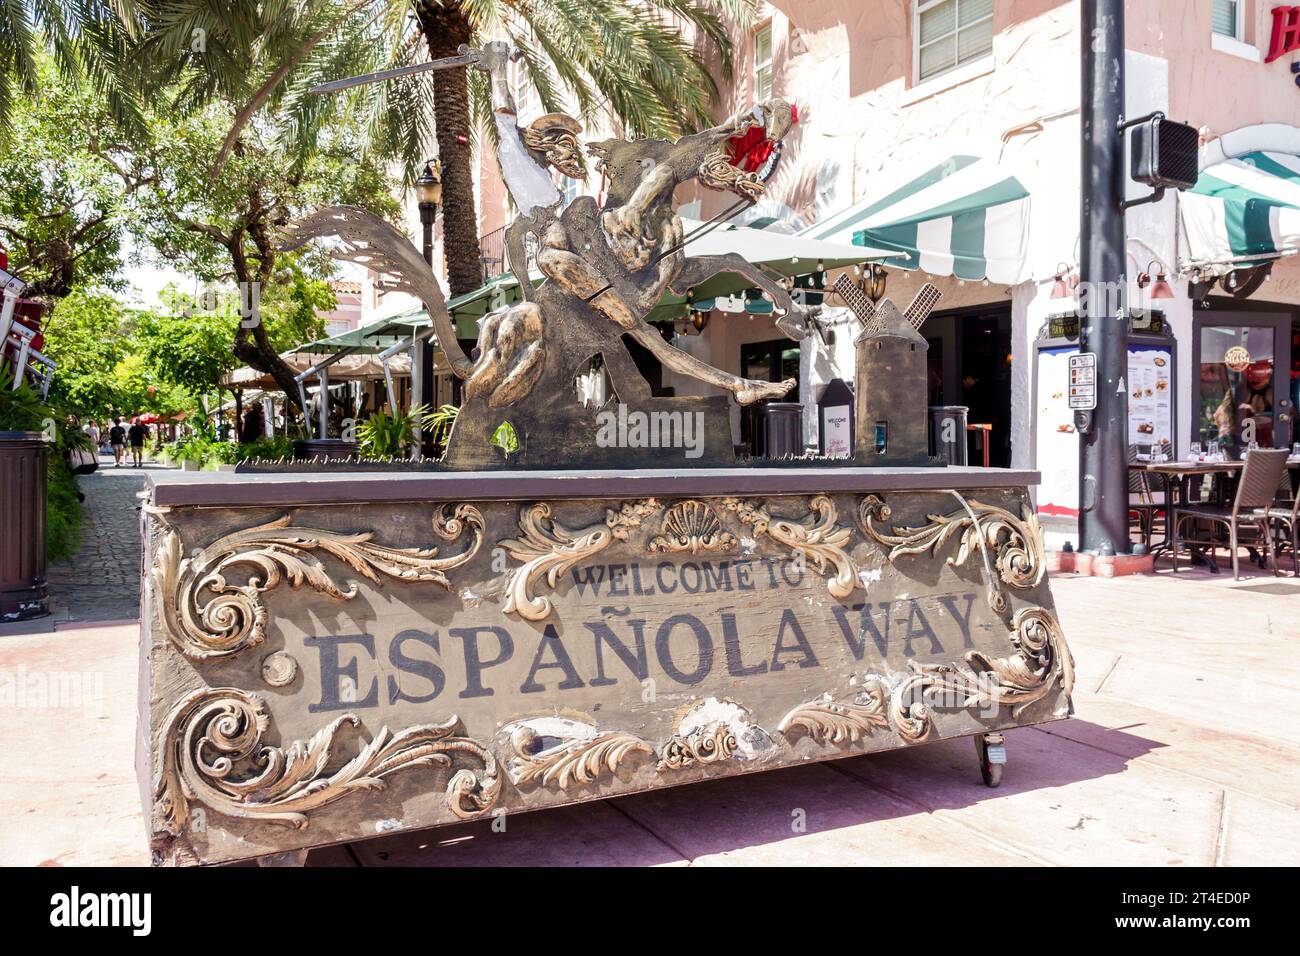 Miami Beach Florida, Espanola Way historisches spanisches Dorf, Fußgängerzone Willkommensschild, Kunstkunstwerk Skulptur Don Quijote Stockfoto